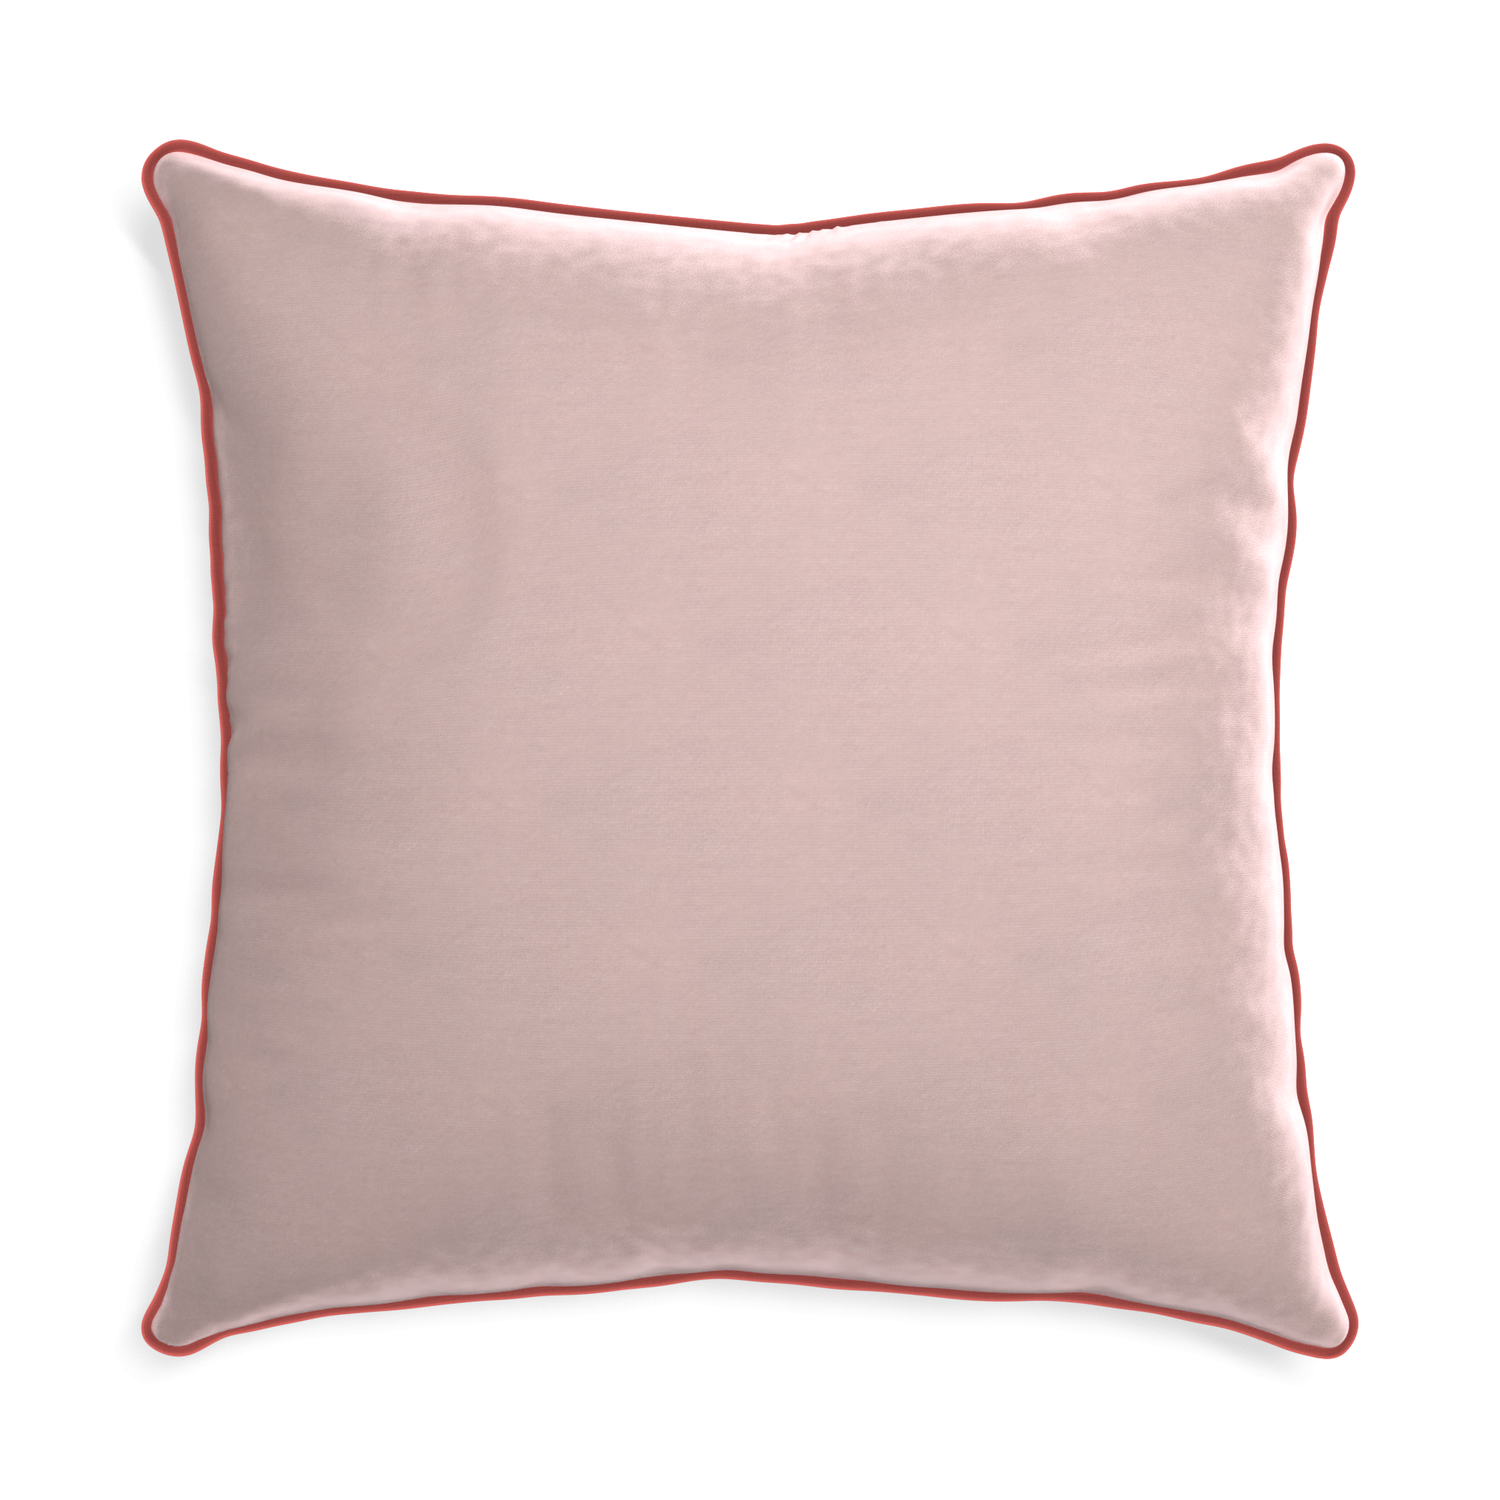 Euro-sham rose velvet custom pillow with c piping on white background